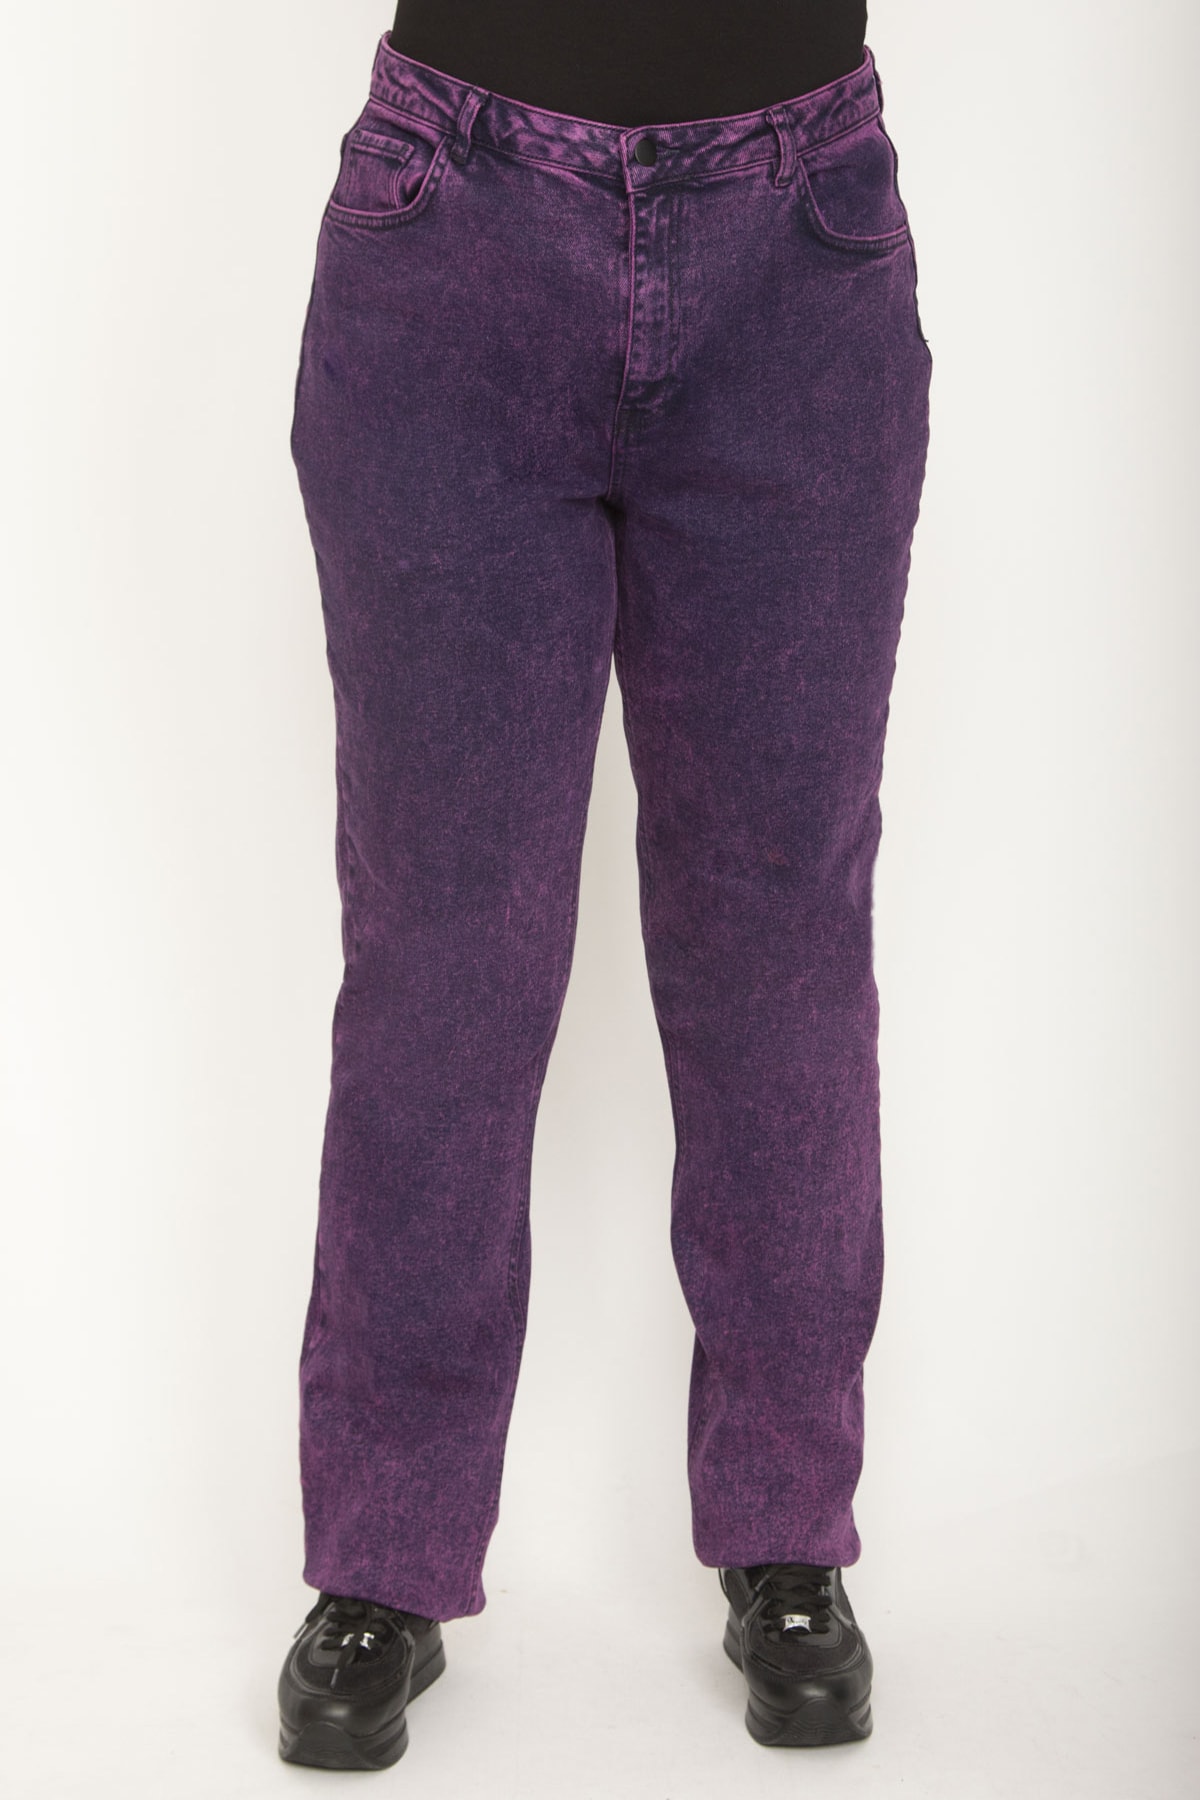 Levně Şans Women's Plus Size Plum Wash Effect Lycra 5-Pocket Jeans Trousers